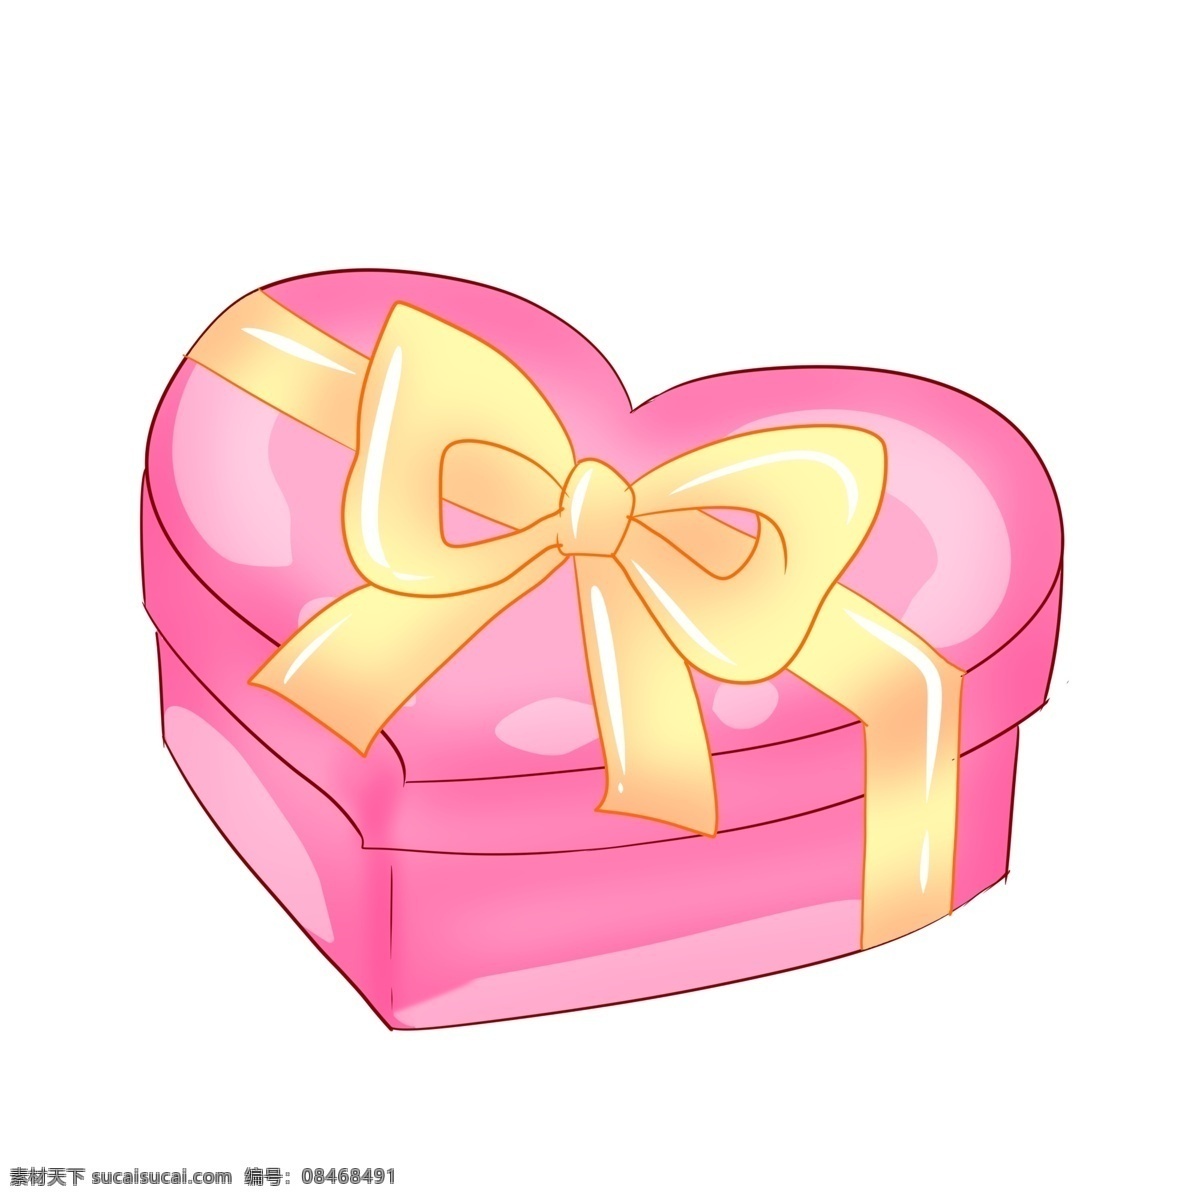 粉色 爱心 精美 礼盒 礼品礼盒 系了彩带 精美的结 少女心 送人礼物 包装 装饰 心形礼盒 蝴蝶结